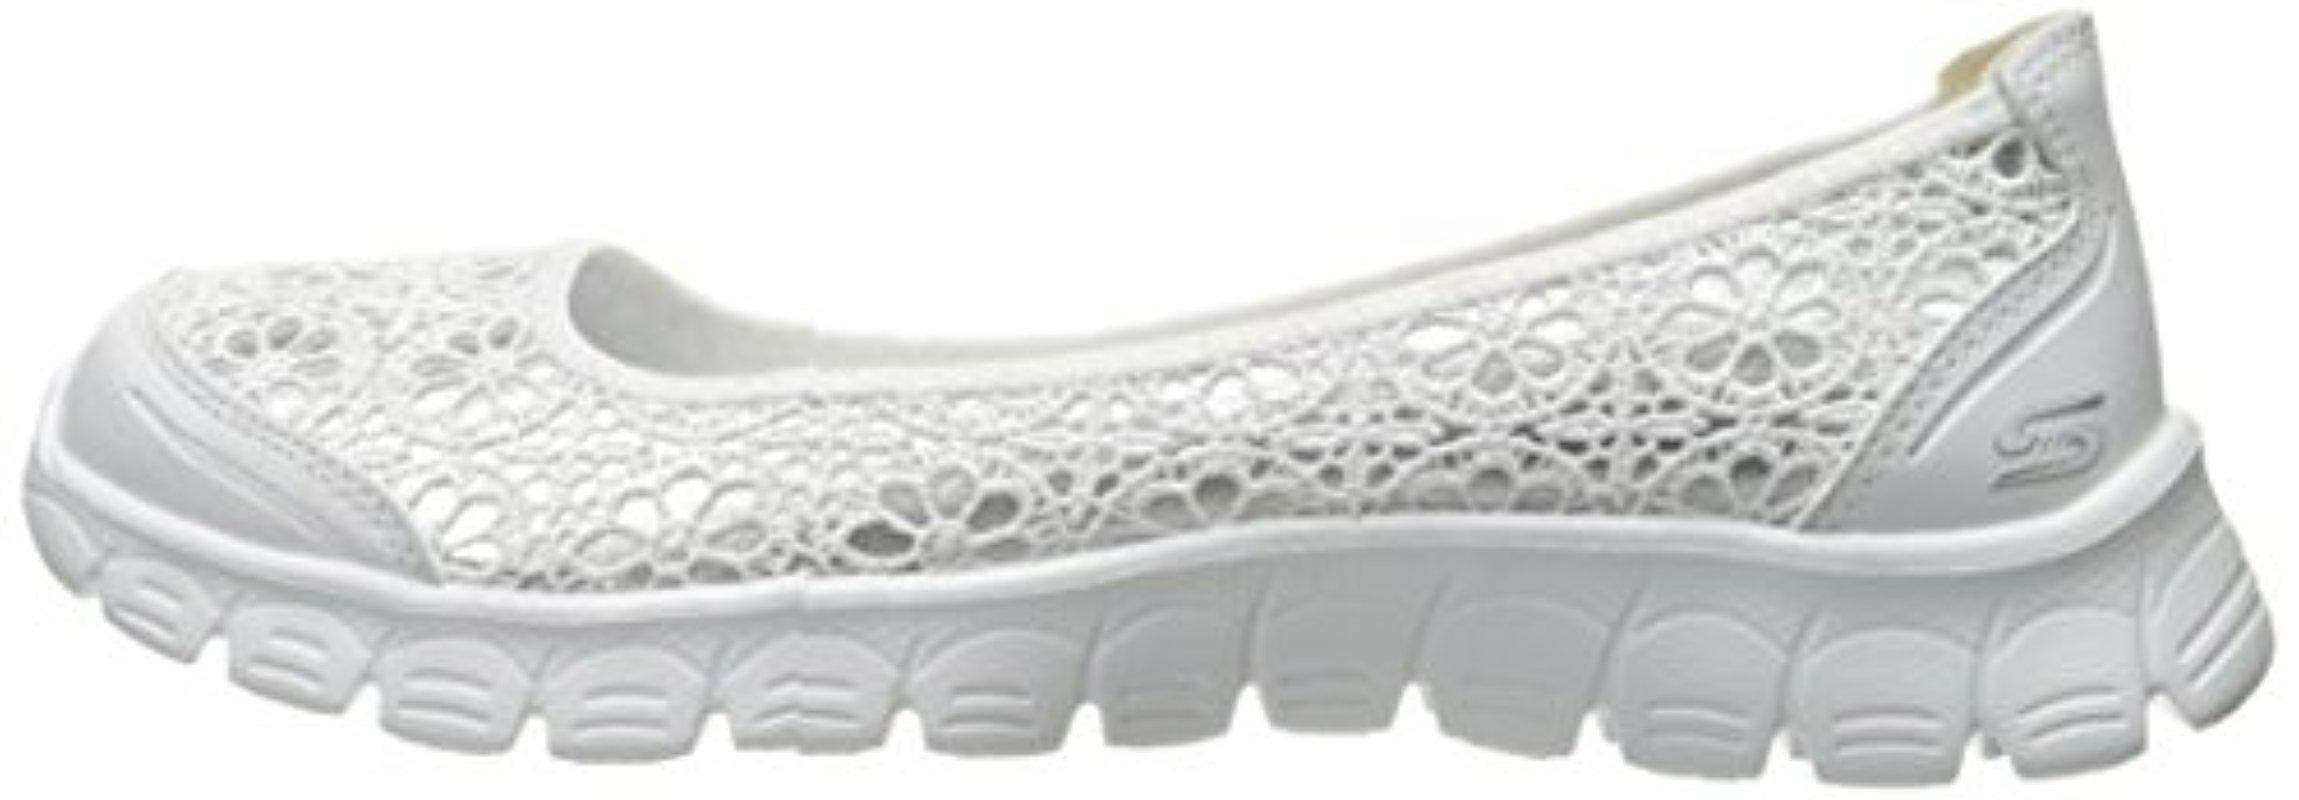 Skechers Rubber Sport Ez Flex Sweetpea Slip-on Flat in White/Silver (White)  | Lyst